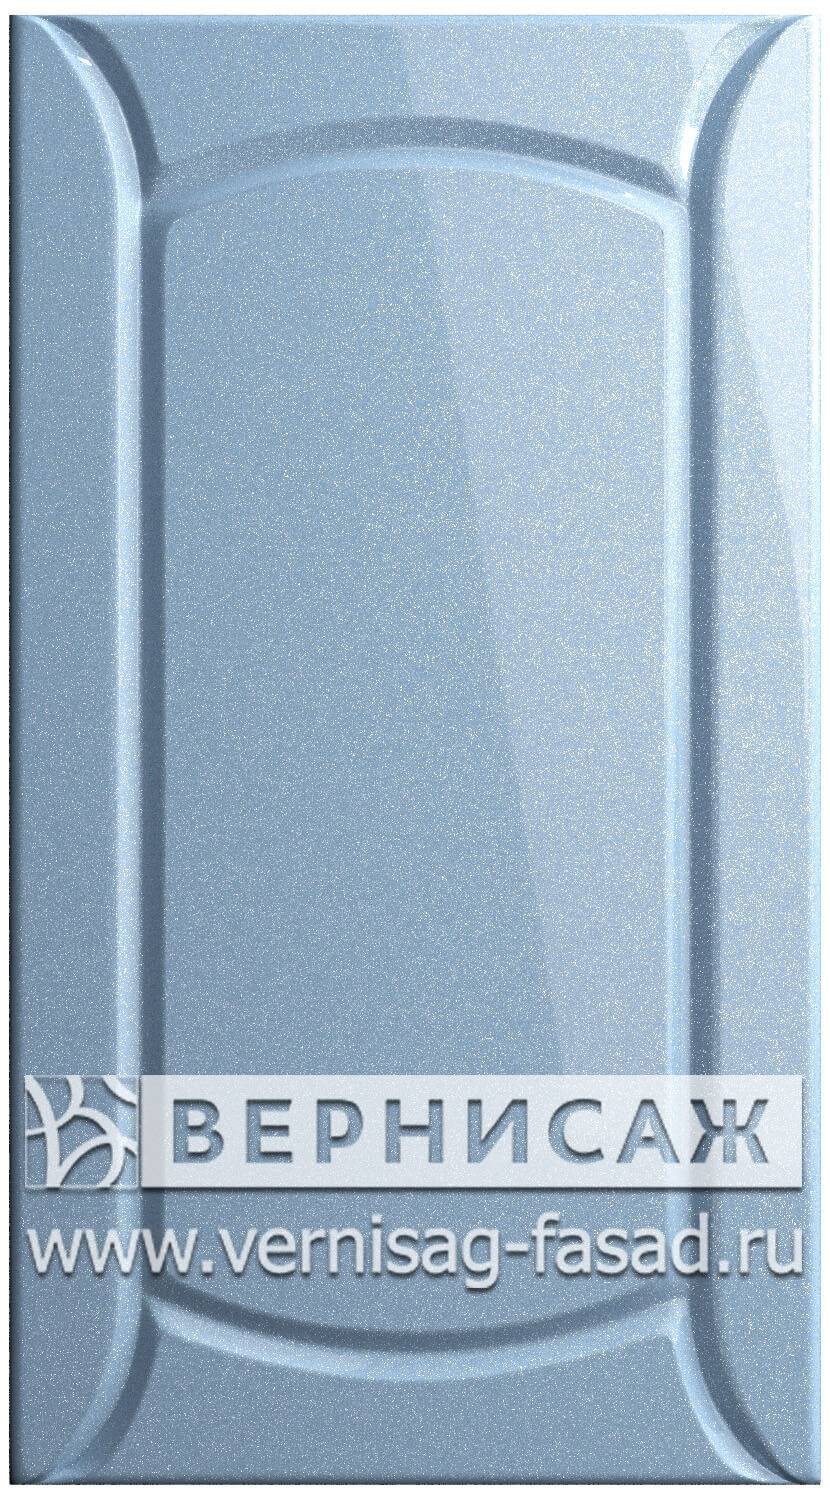  Фасады в пленке ПВХ, Фрезеровка № 42, цвет Голубой металлик